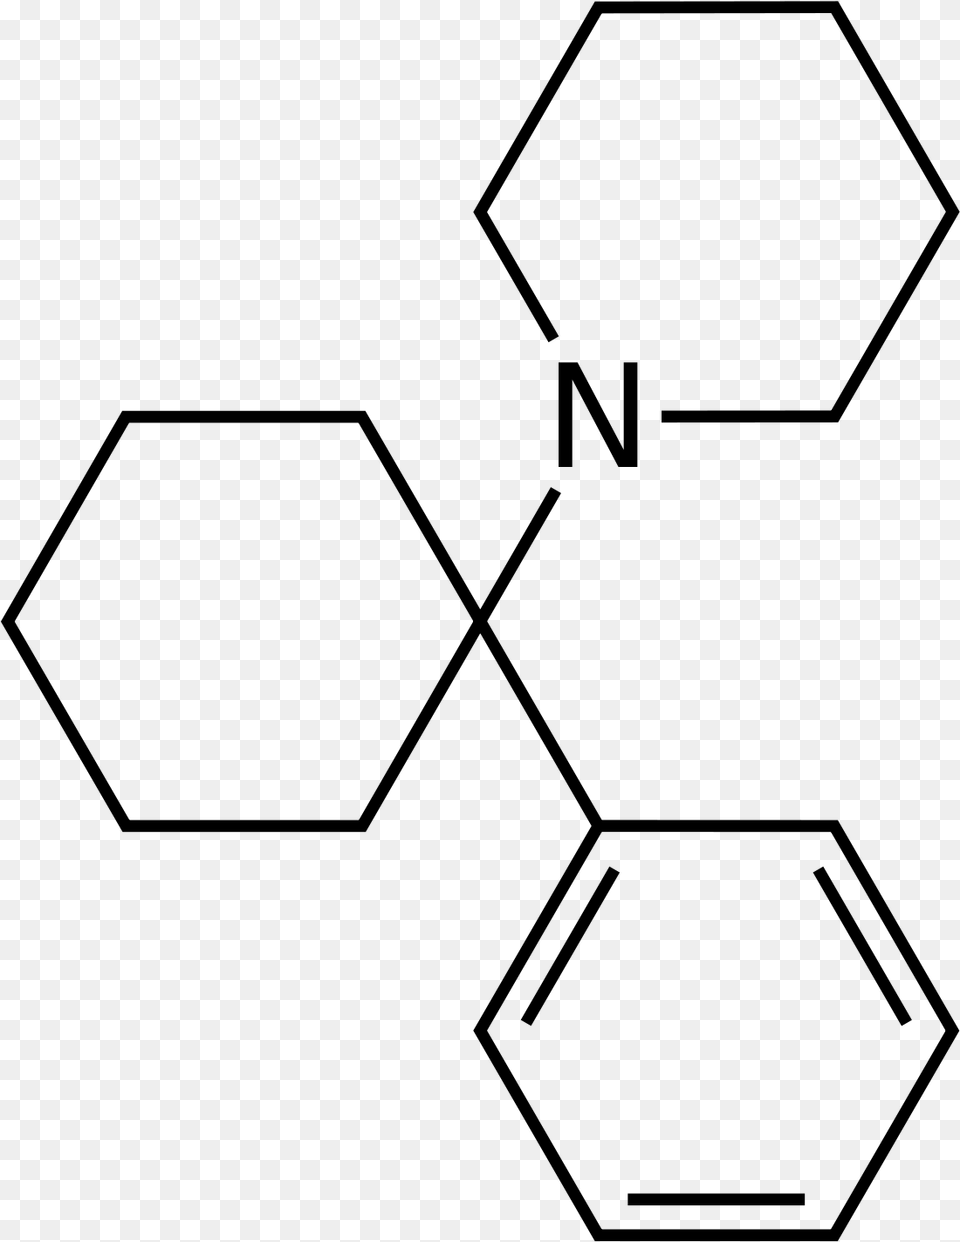 Pyrene Butyric Acid, Gray Png Image